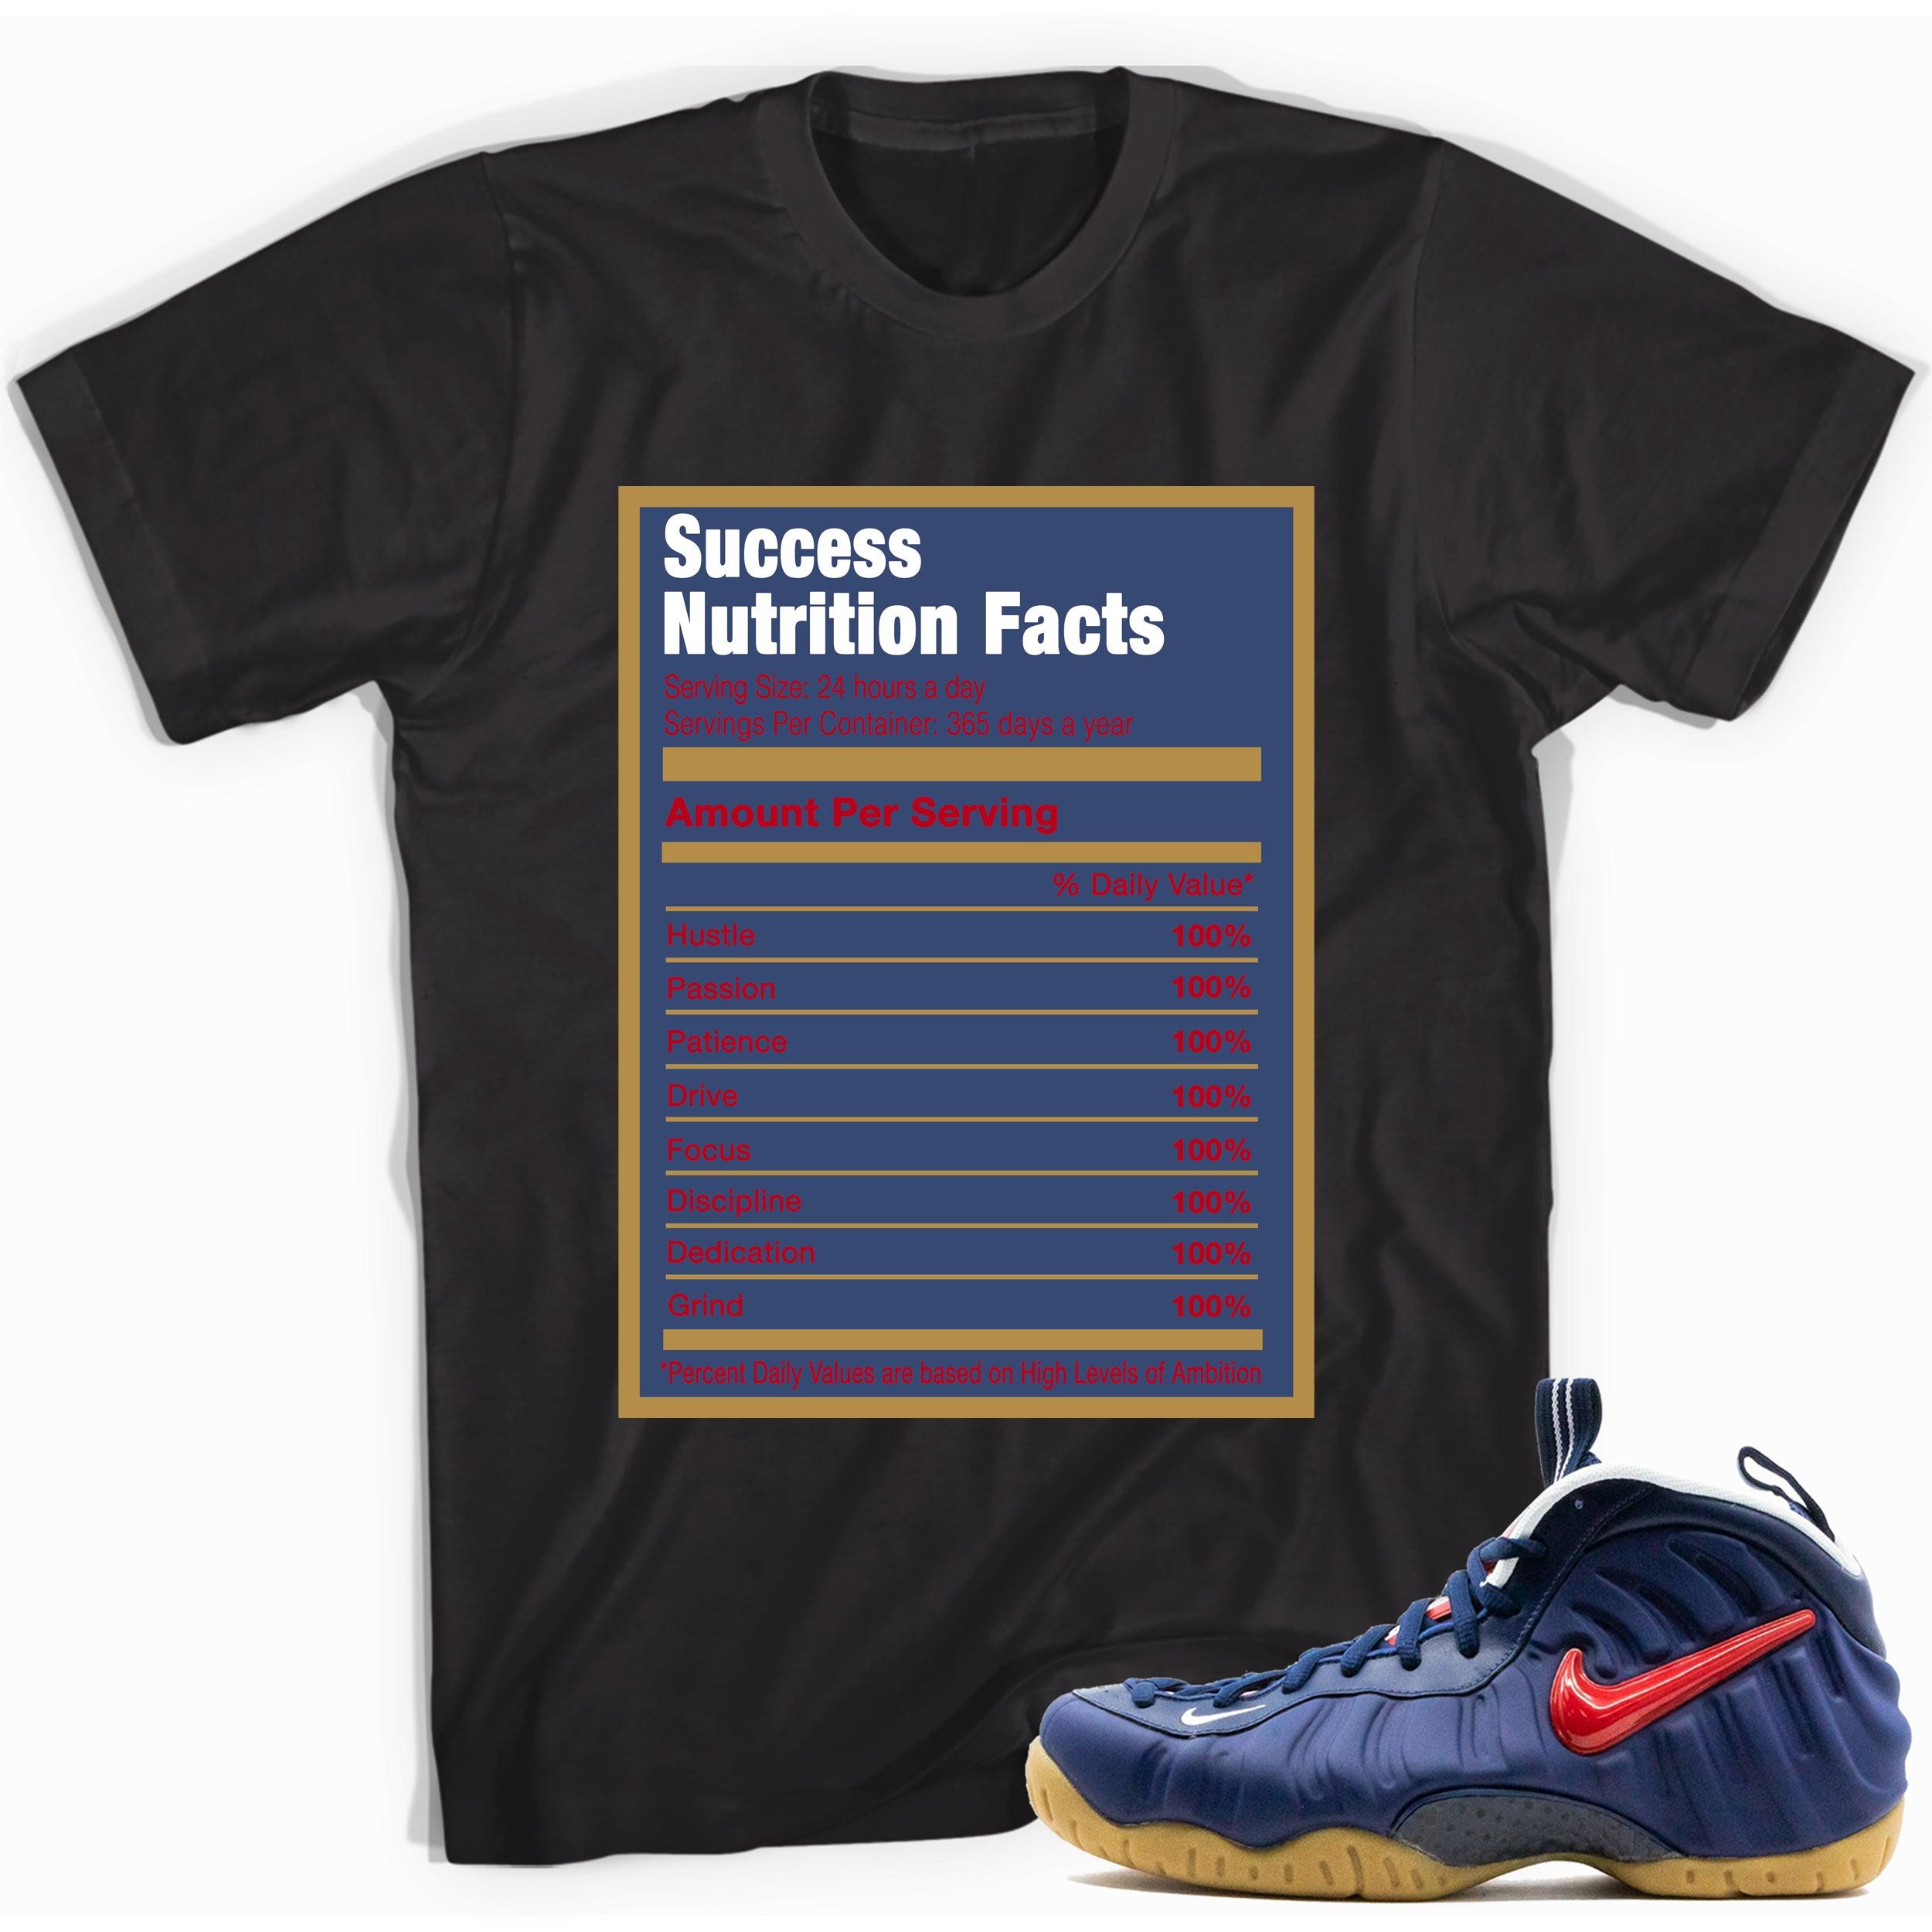 Success Nutrition Shirt Foamposite Pro Blue Void University Red photo